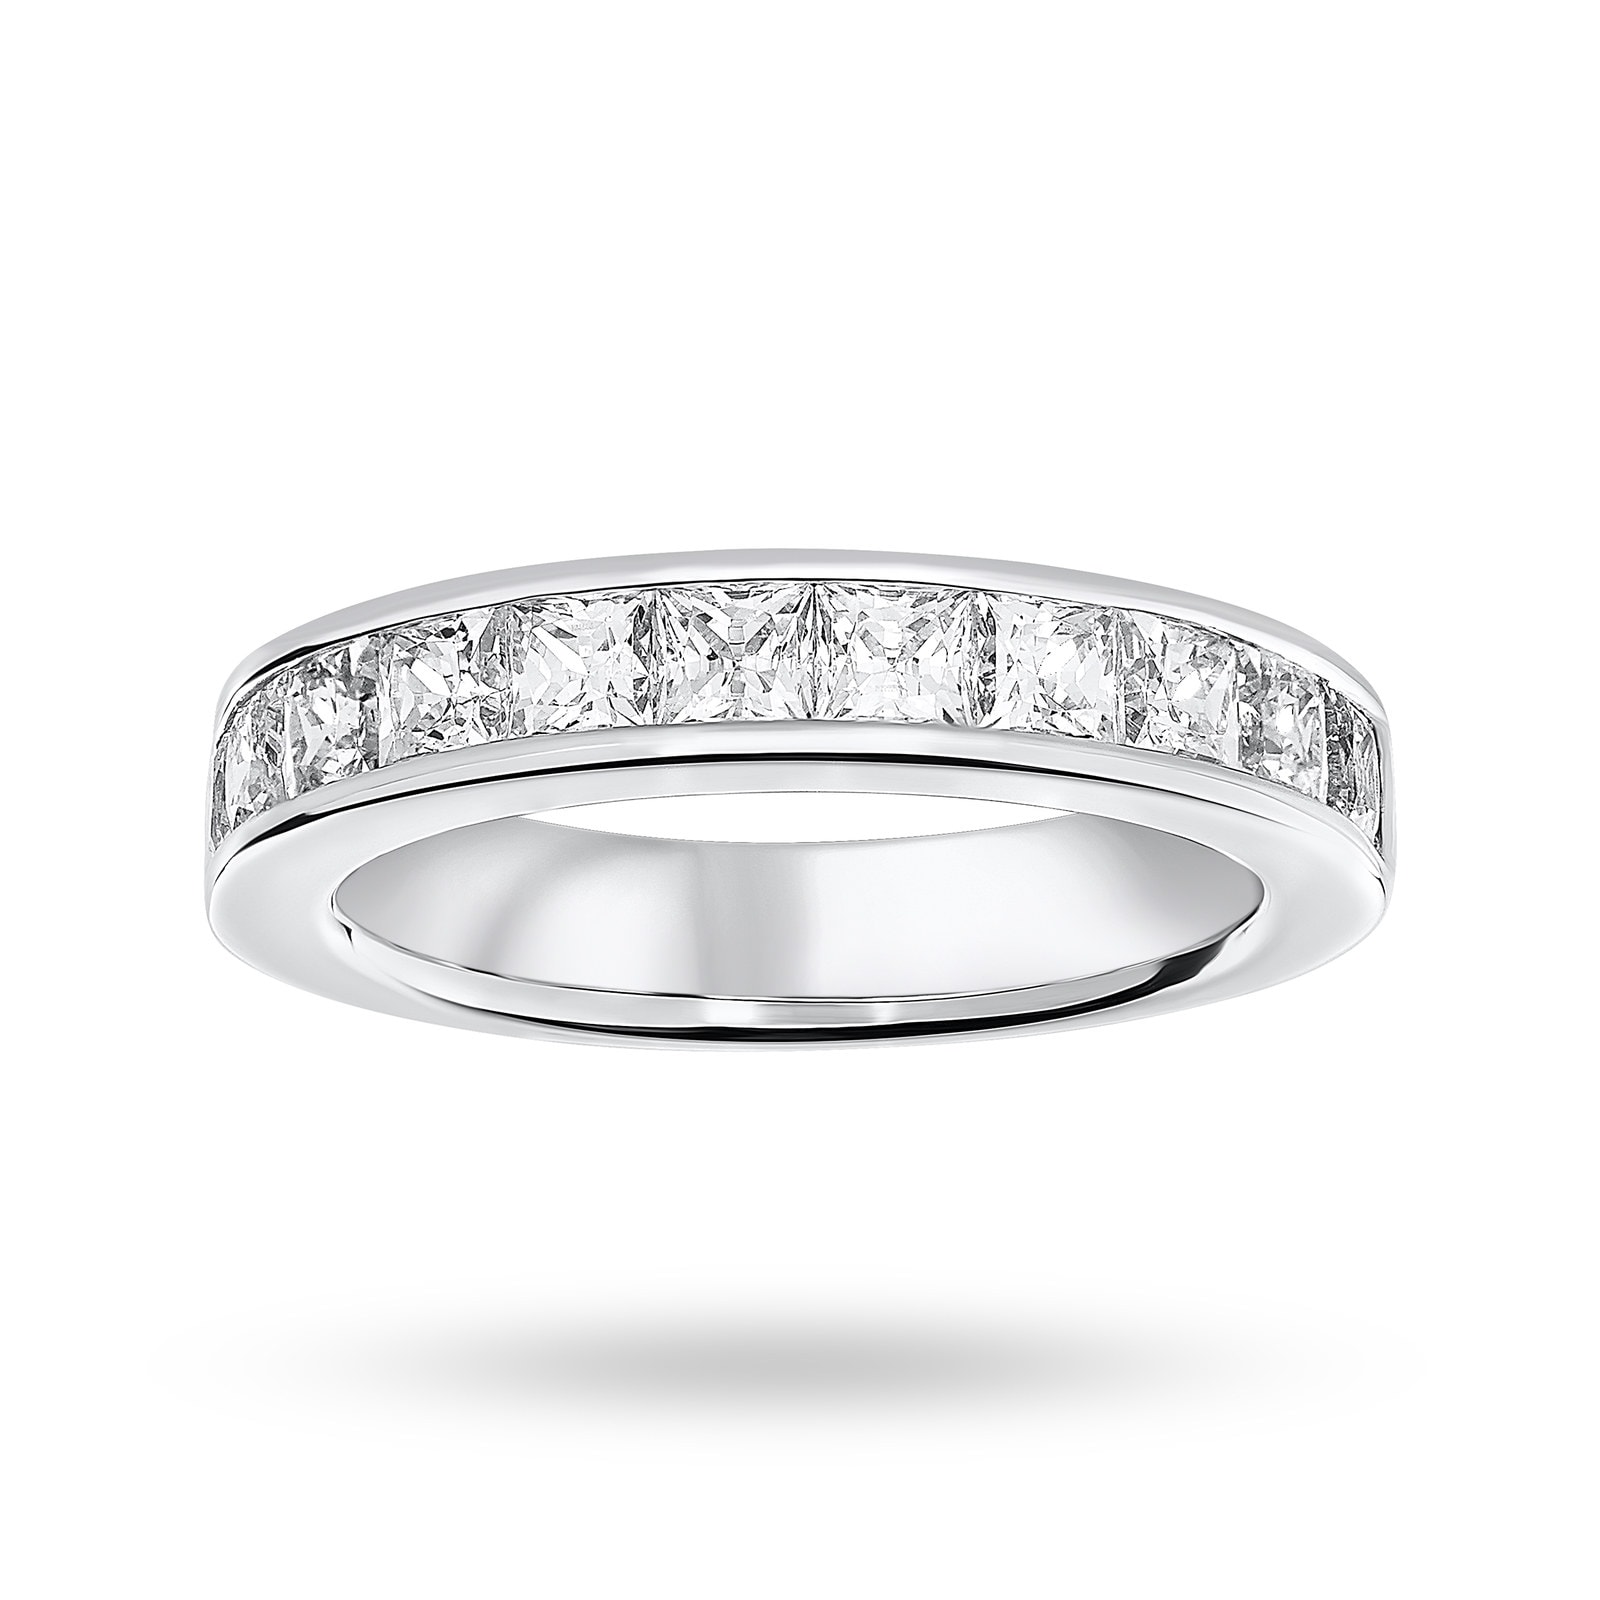 18 Carat White Gold 2.00 Carat Princess Cut Half Eternity Ring - Ring Size M